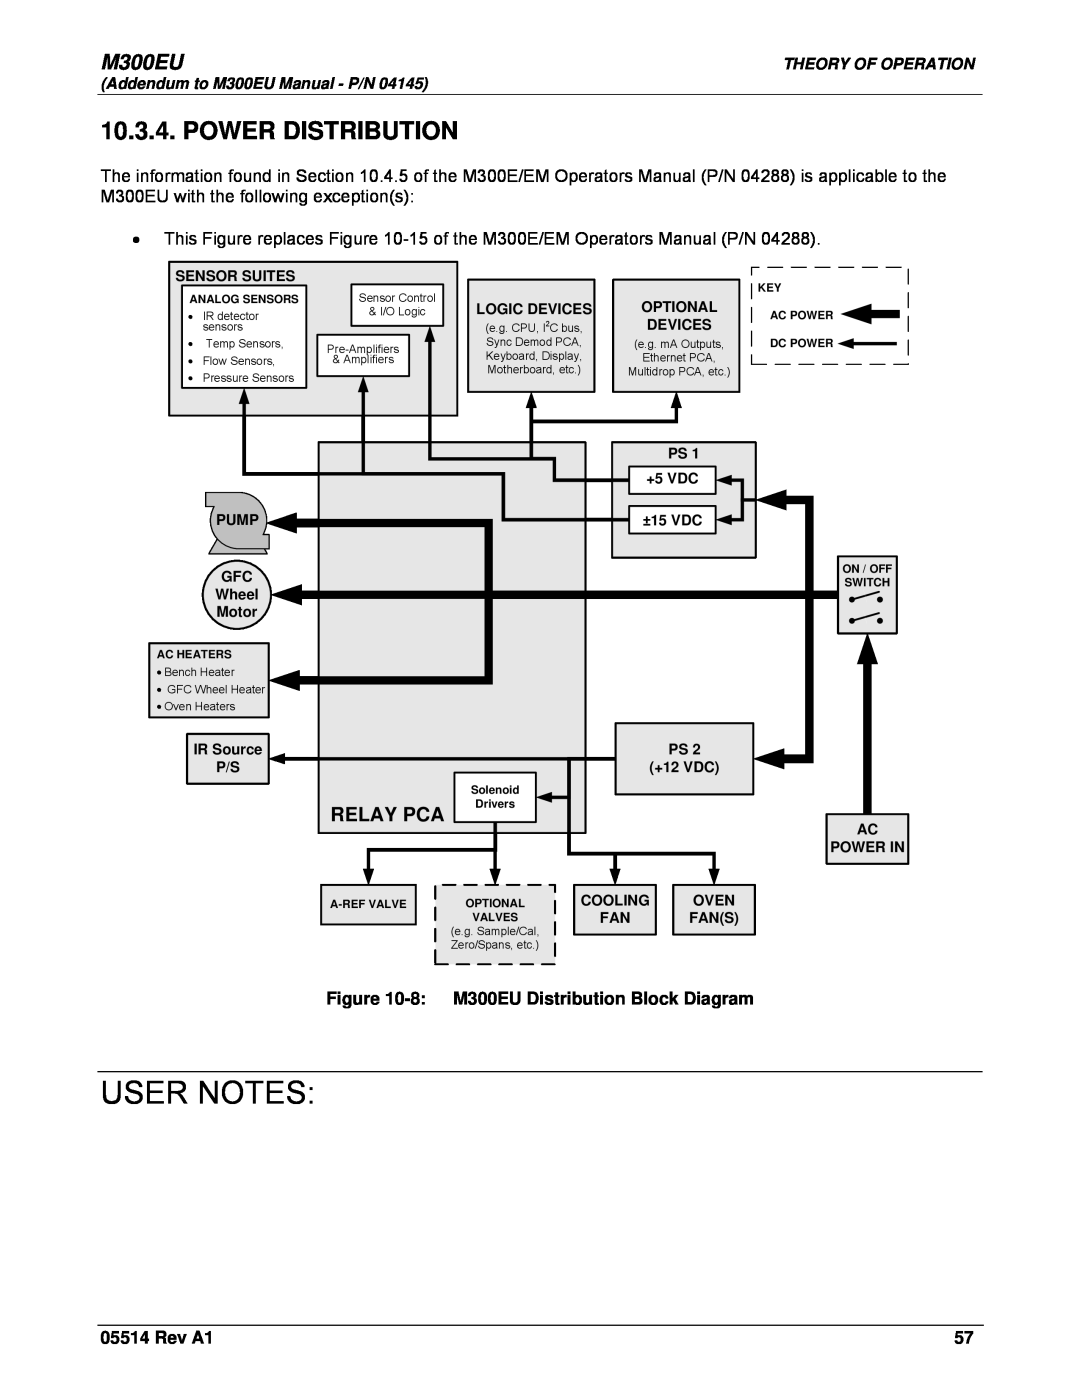 Teledyne Model 300EU manual Power Distribution, Relay Pca, User Notes, 8 M300EU Distribution Block Diagram, Rev A1 